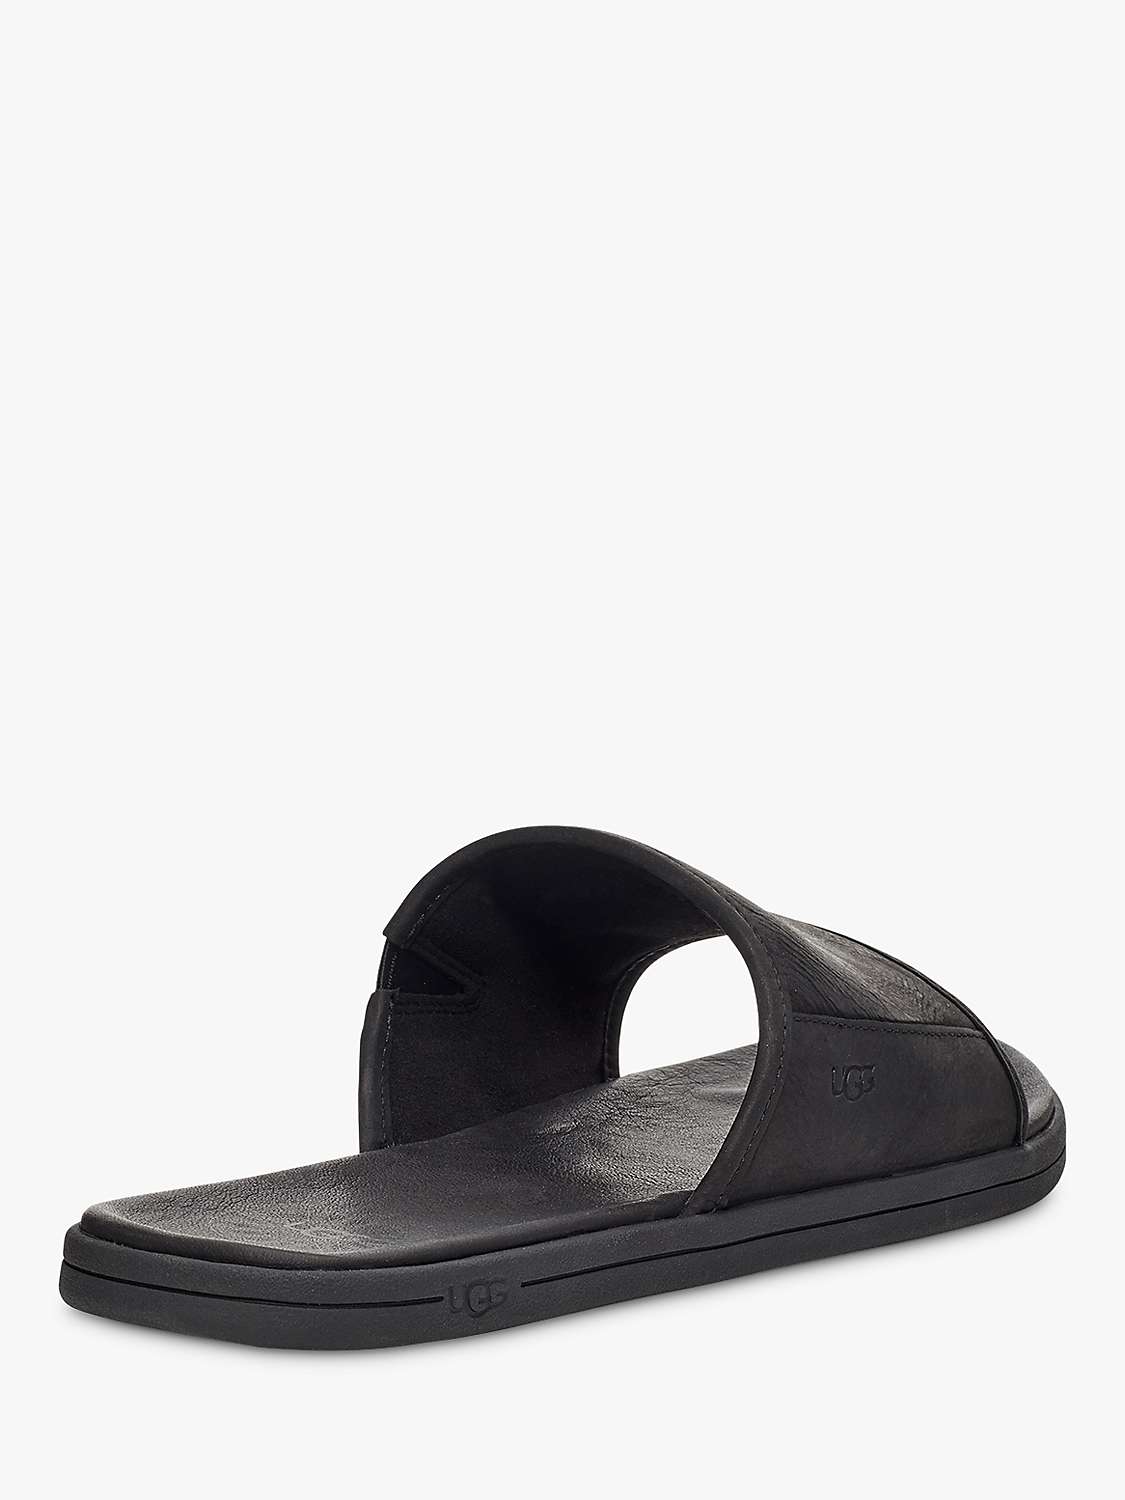 Buy UGG Seaside Slider Sandals, Black Online at johnlewis.com